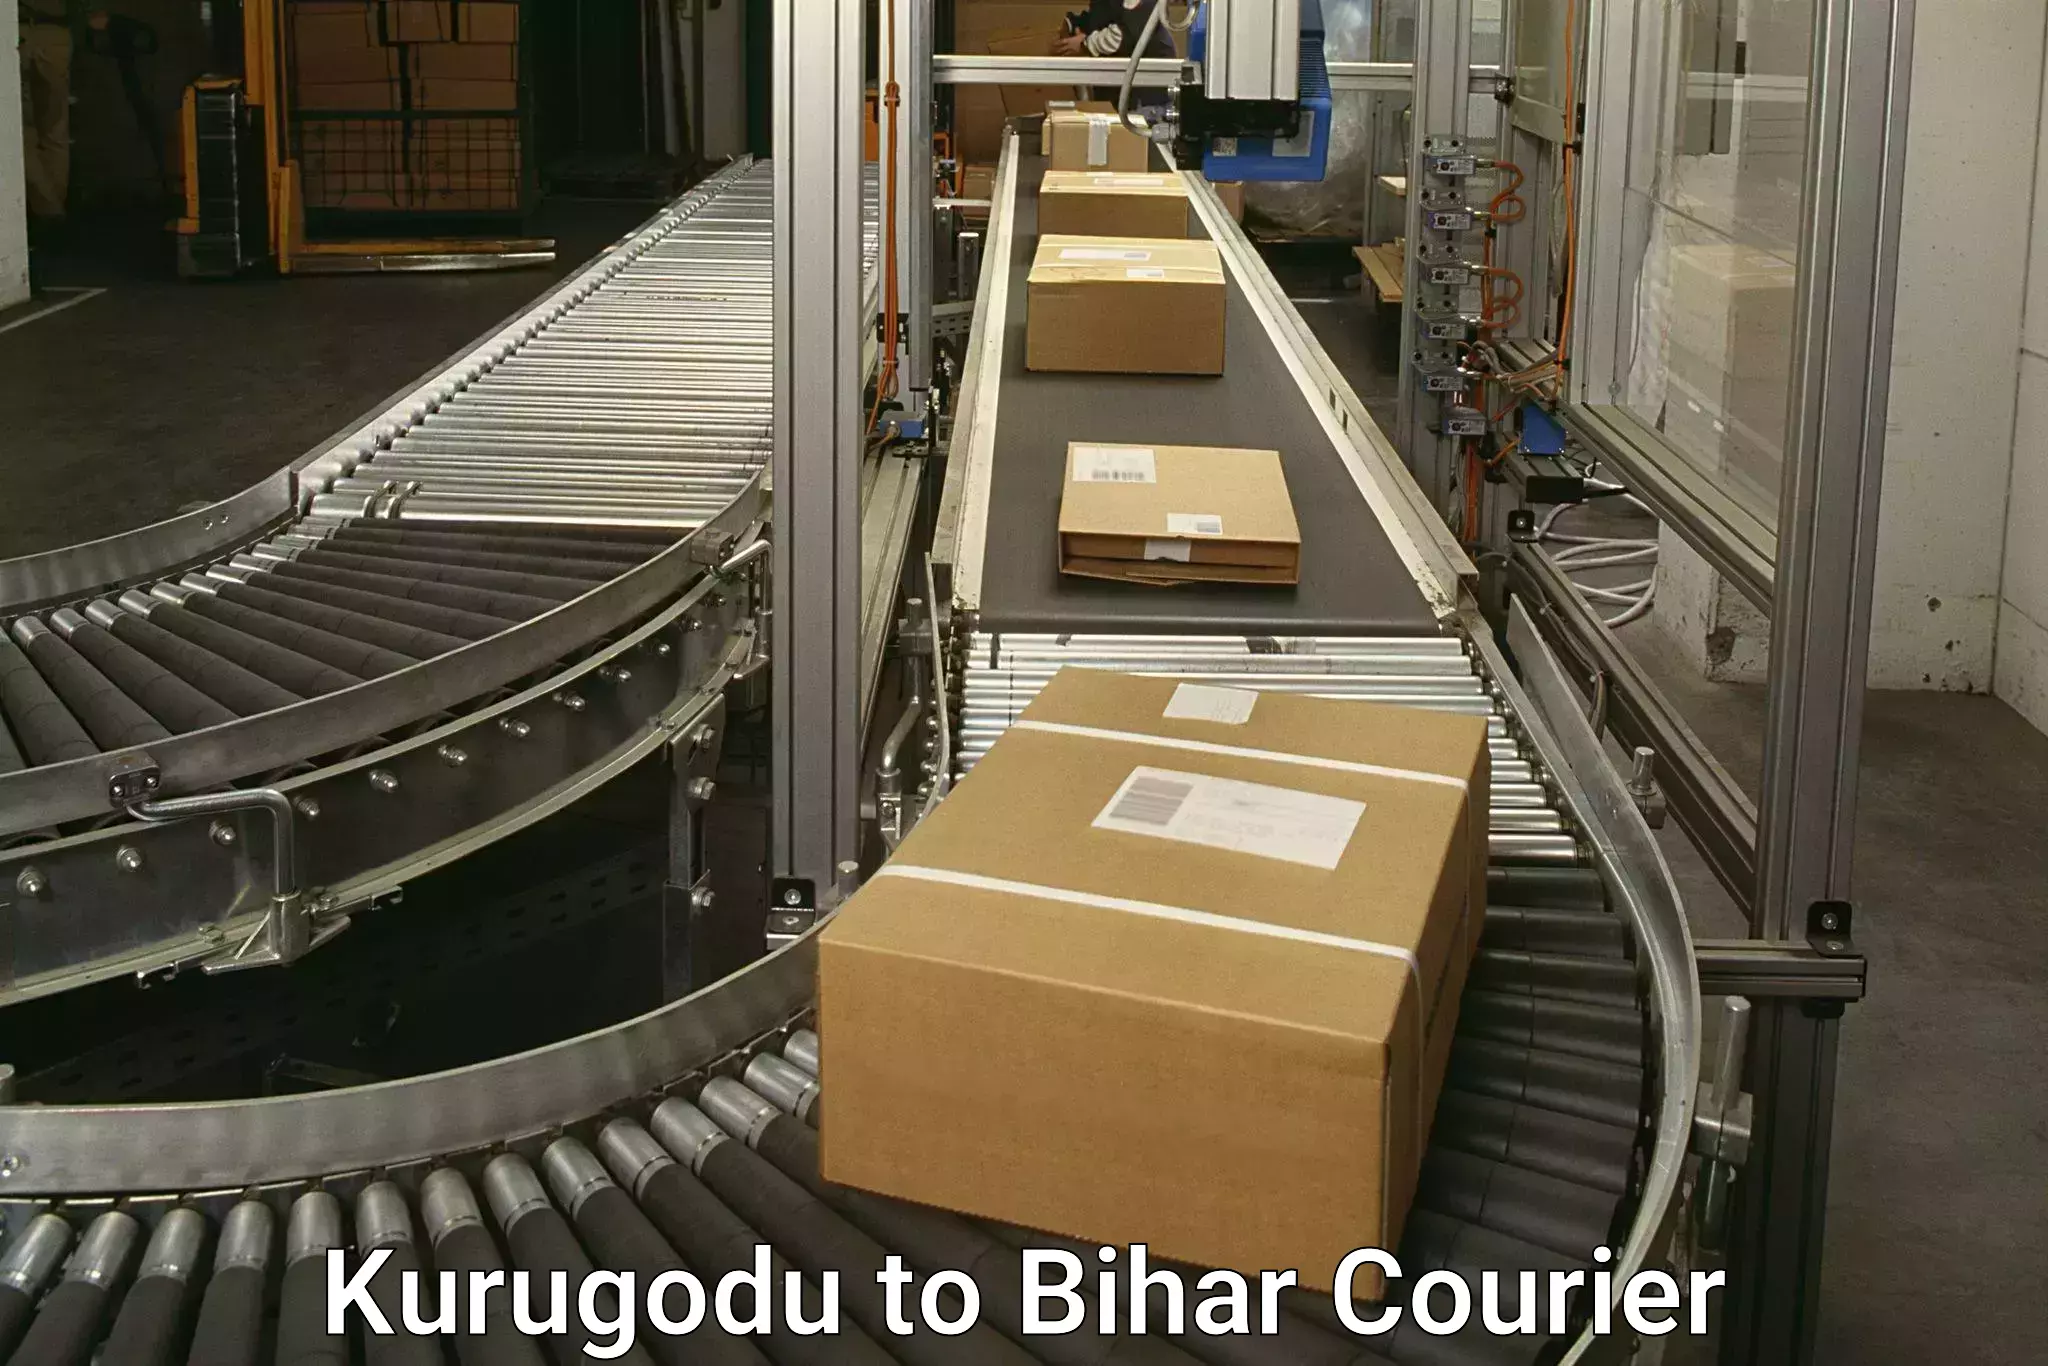 Reliable courier service in Kurugodu to Bihar